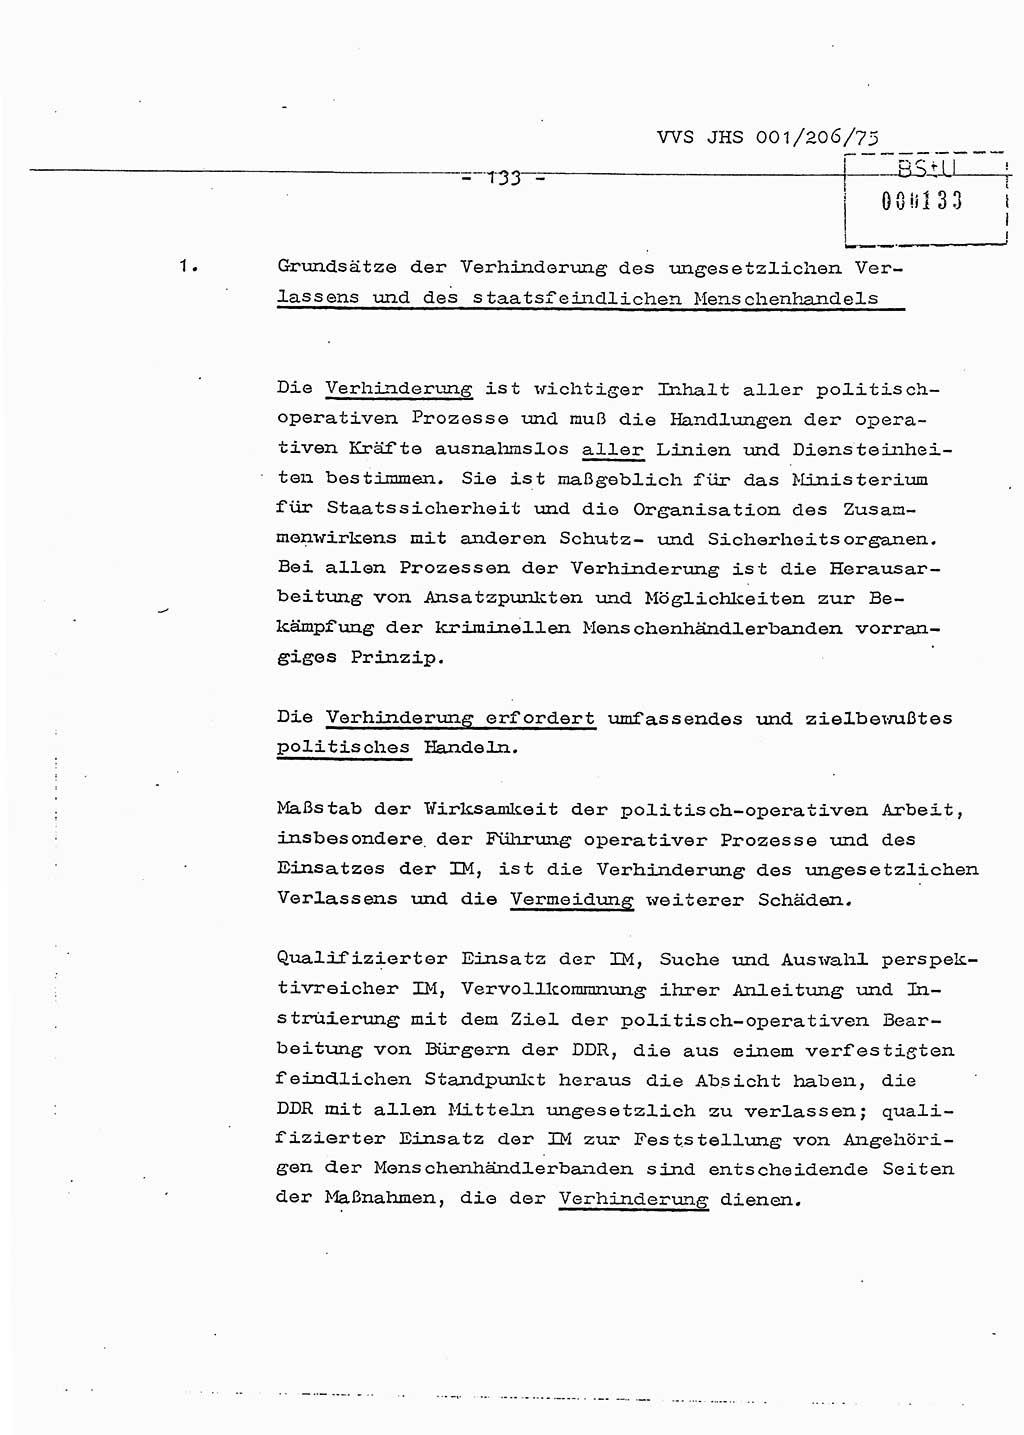 Dissertation Generalmajor Manfred Hummitzsch (Leiter der BV Leipzig), Generalmajor Heinz Fiedler (HA Ⅵ), Oberst Rolf Fister (HA Ⅸ), Ministerium für Staatssicherheit (MfS) [Deutsche Demokratische Republik (DDR)], Juristische Hochschule (JHS), Vertrauliche Verschlußsache (VVS) 001-206/75, Potsdam 1975, Seite 133 (Diss. MfS DDR JHS VVS 001-206/75 1975, S. 133)